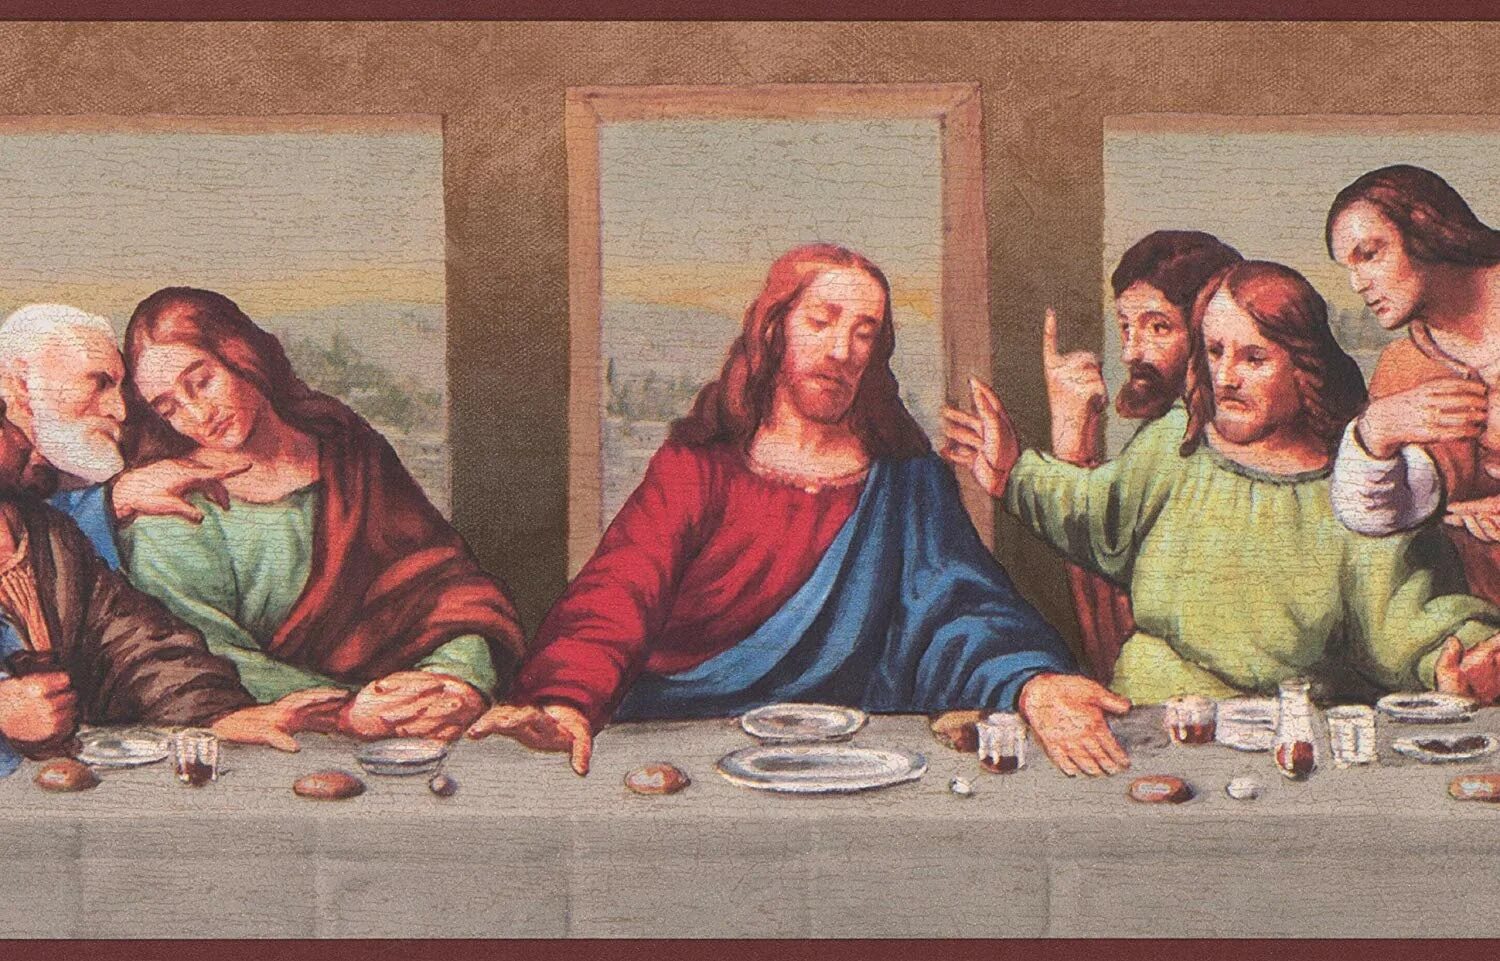 Да винчи вечеря. The last supper Леонардо да Винчи. Тайная вечеря картина Леонардо да Винчи. Ласт Саппер да Винчи. Леонардо д Винчи Тайная вечеря ФРАГМЕНТЫ.